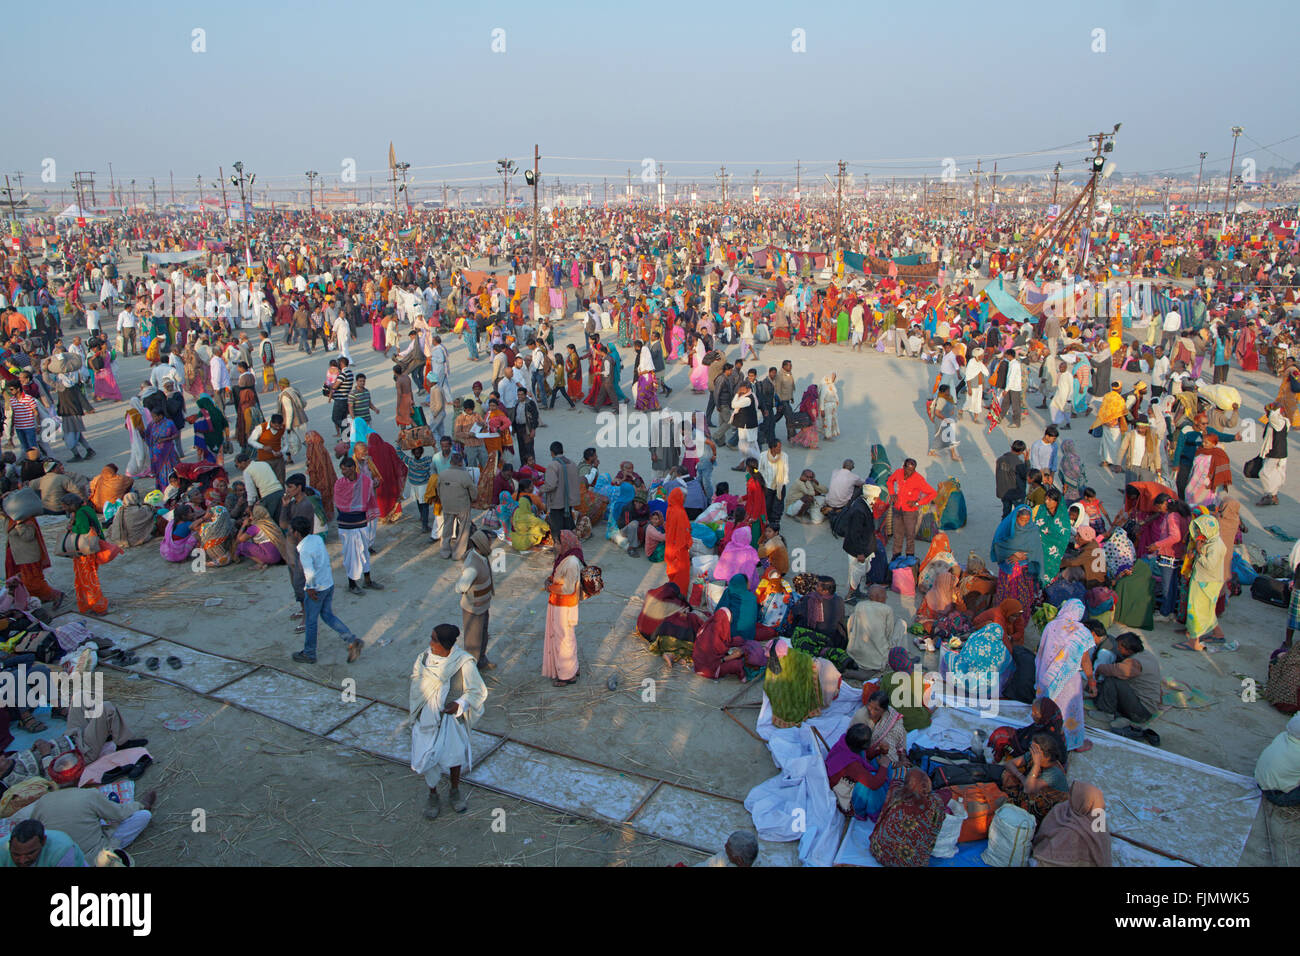 Maha Kumbh Mela est un énorme festival hindou et le plus grand rassemblement de l'histoire humaine. En 2013 quelque 100 millions de personnes vis Banque D'Images